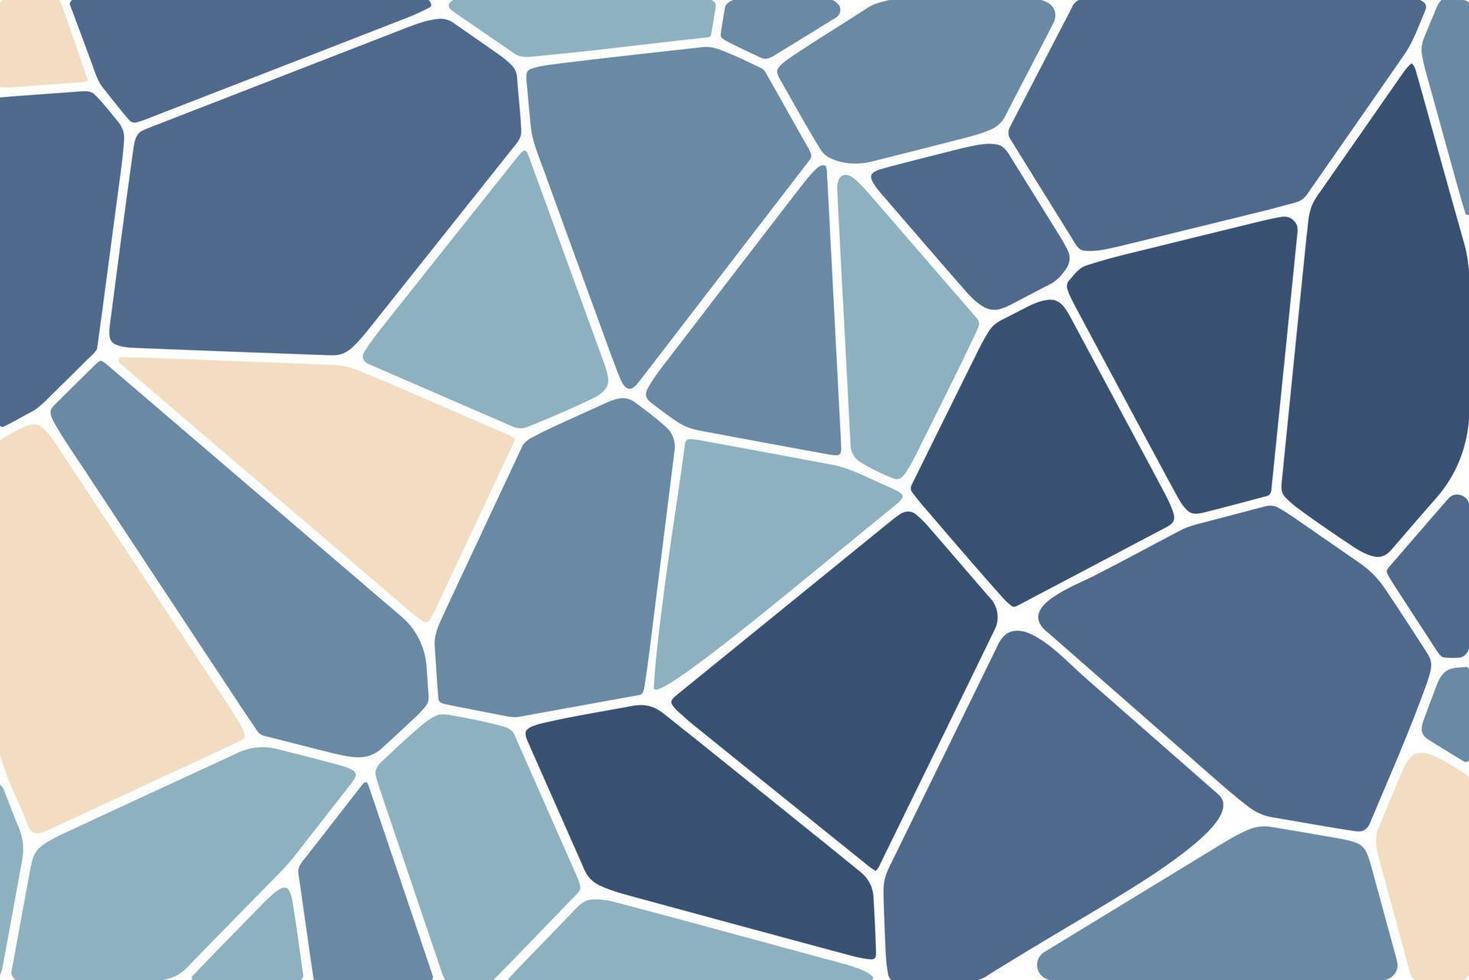 voronoi diagrama colorido textura de mosaico geométrico, fondo, textura de piedra, patrones de mosaico de vector de tela impresa